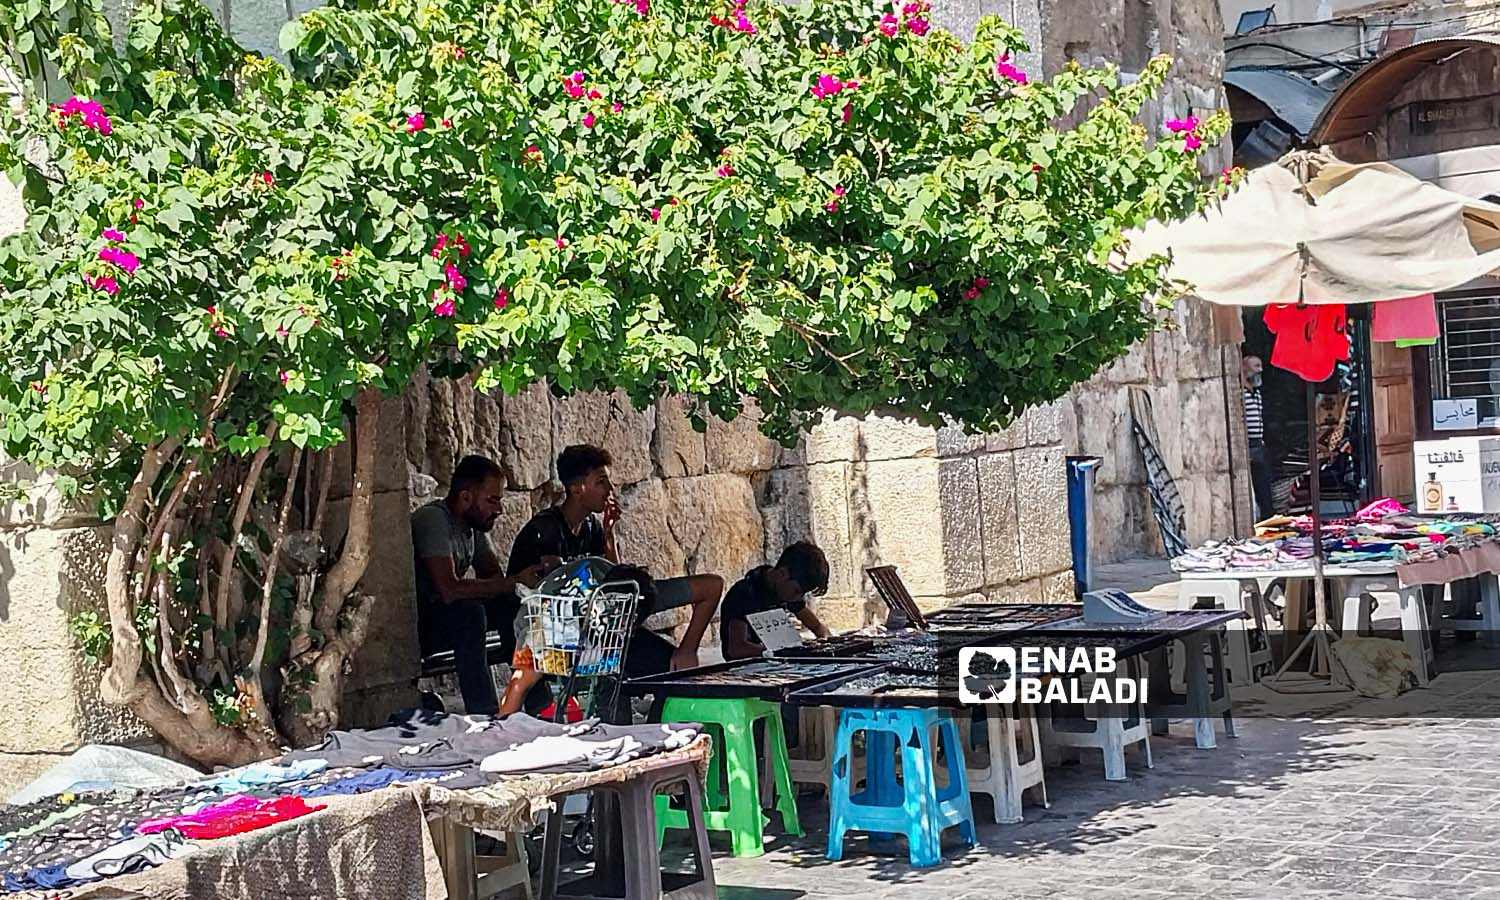 شباب يجلسون أمام بسطات لبيع التحف والتذاكر  بحي القيمرية في دمشق - 26 من تموز 2023 (عنب بلدي / سارة الأحمد)
